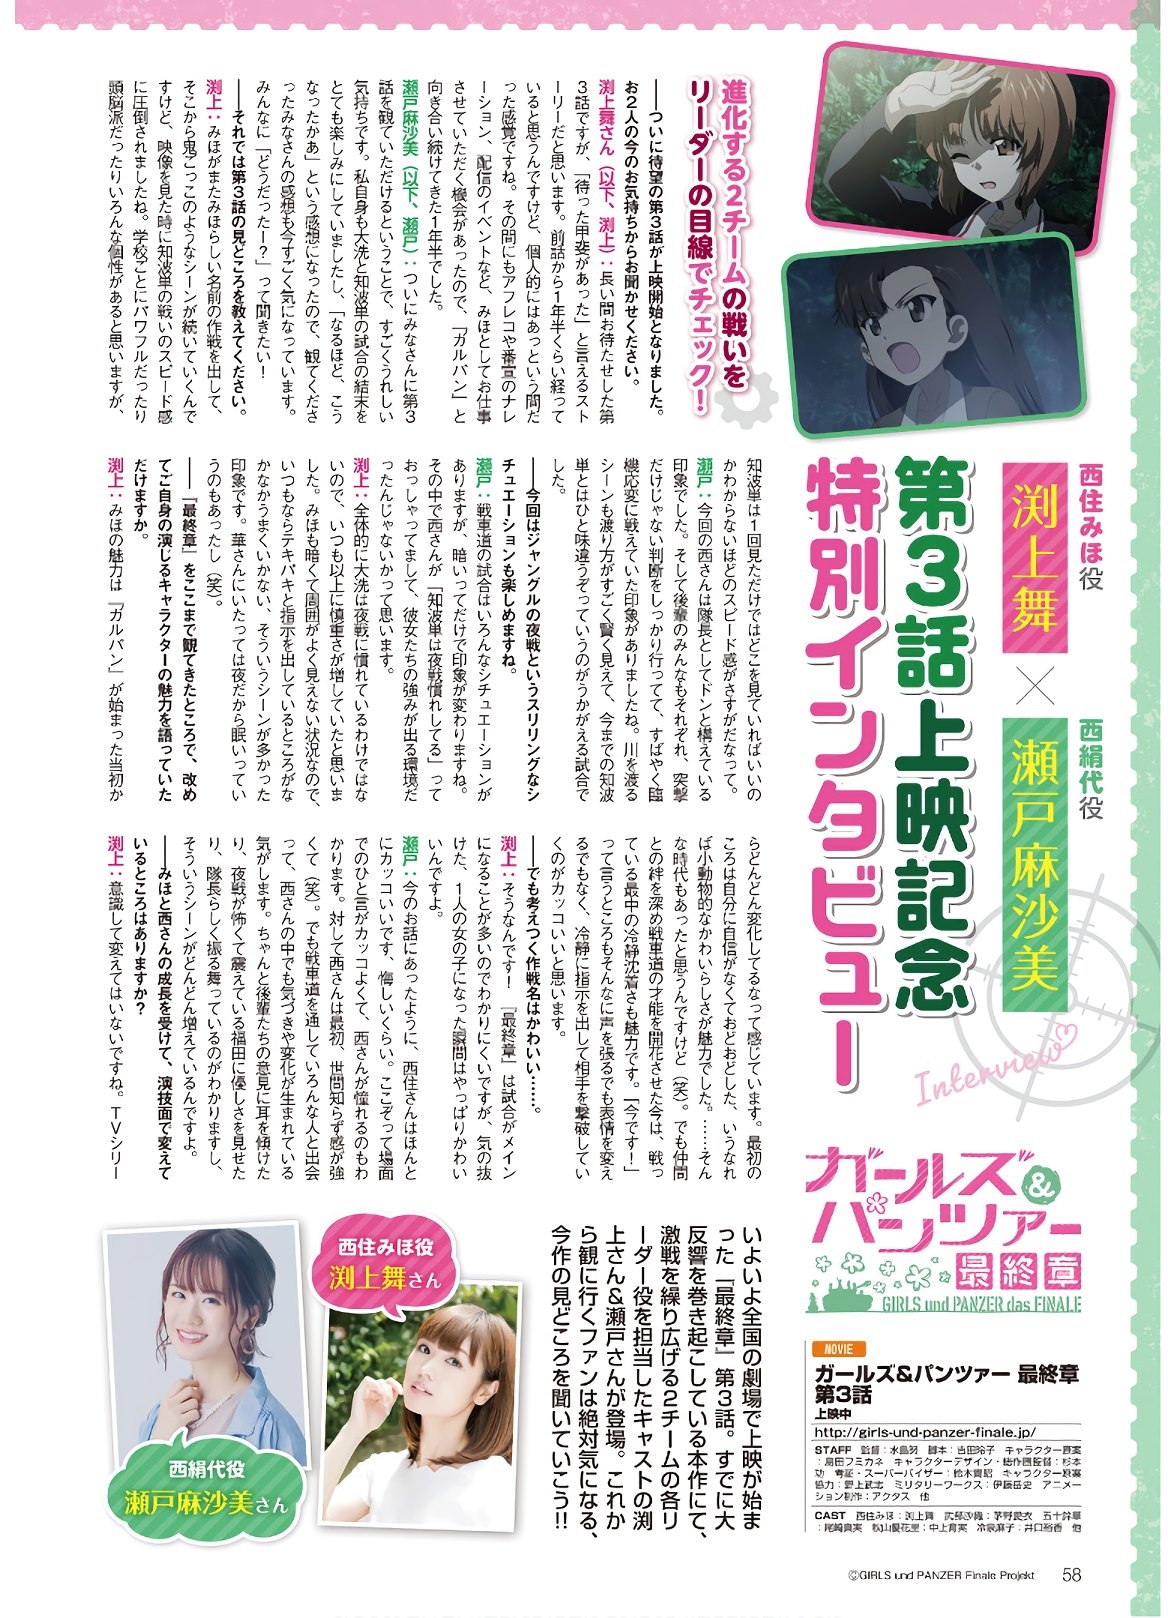 Dengeki G's Magazine #286 - May 2021 55